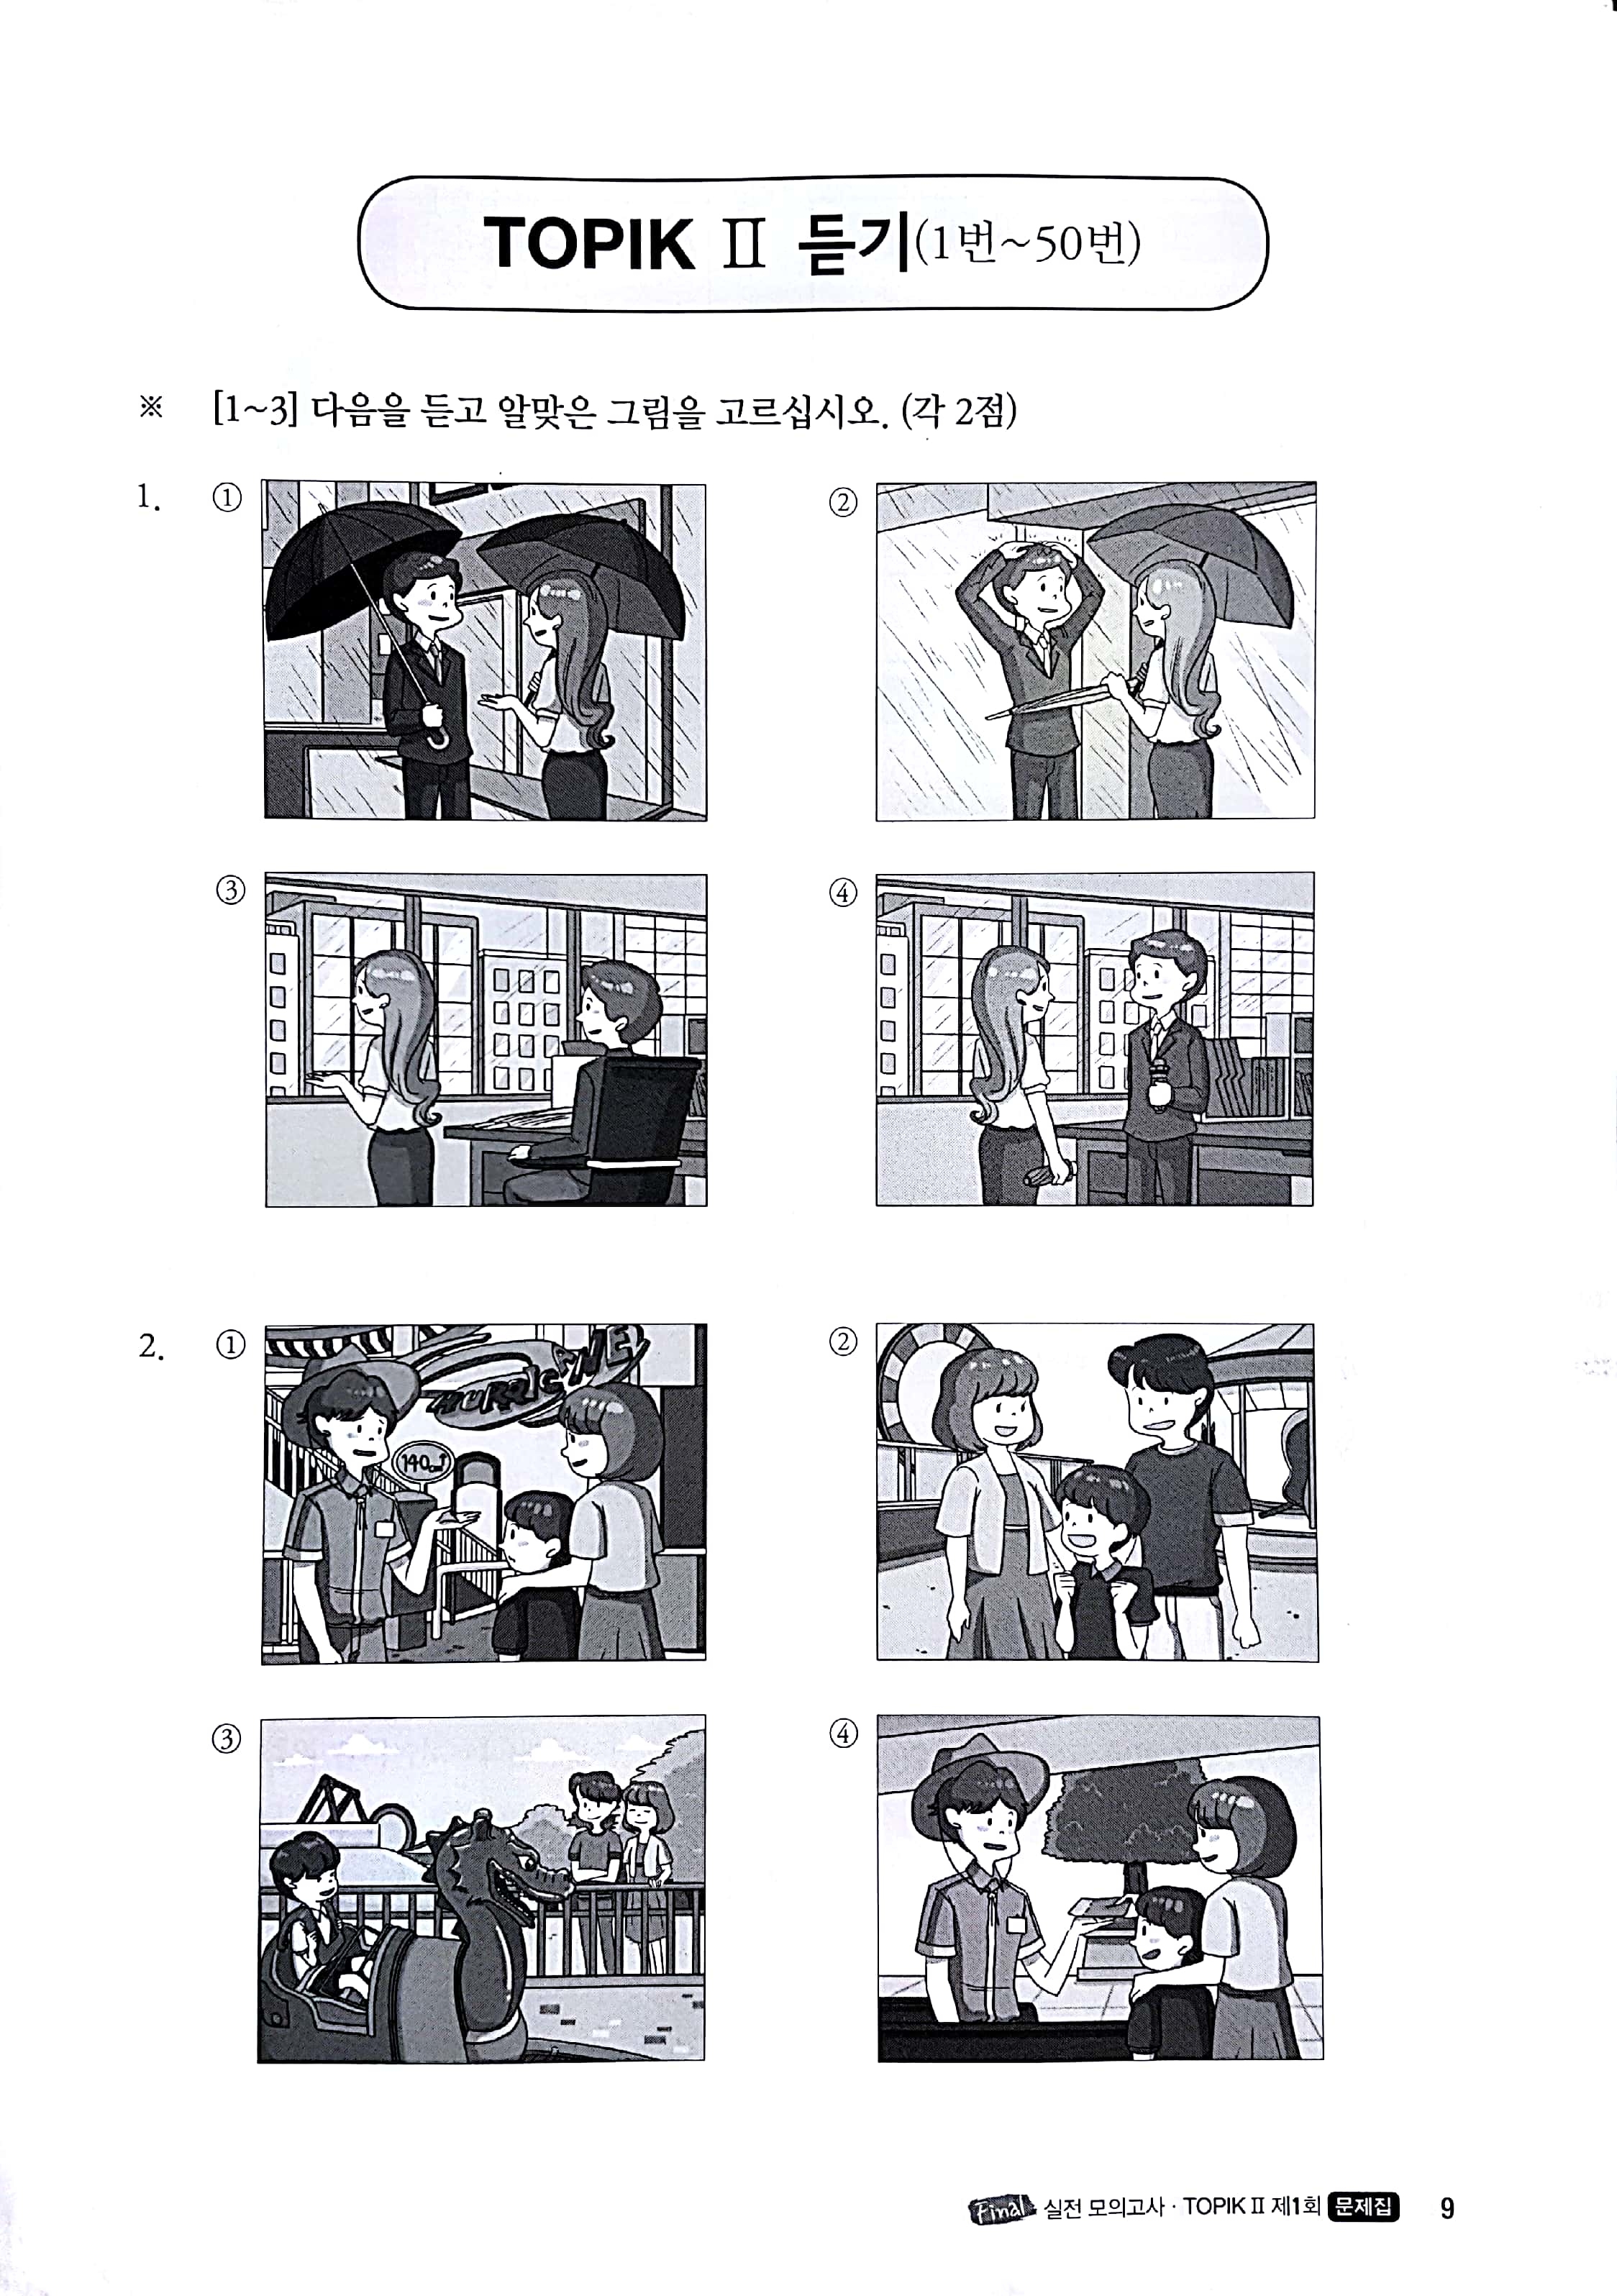 Tiếng Hàn Topik II_Bộ đề Topik Master_10 đề Nghe Đọc Viết